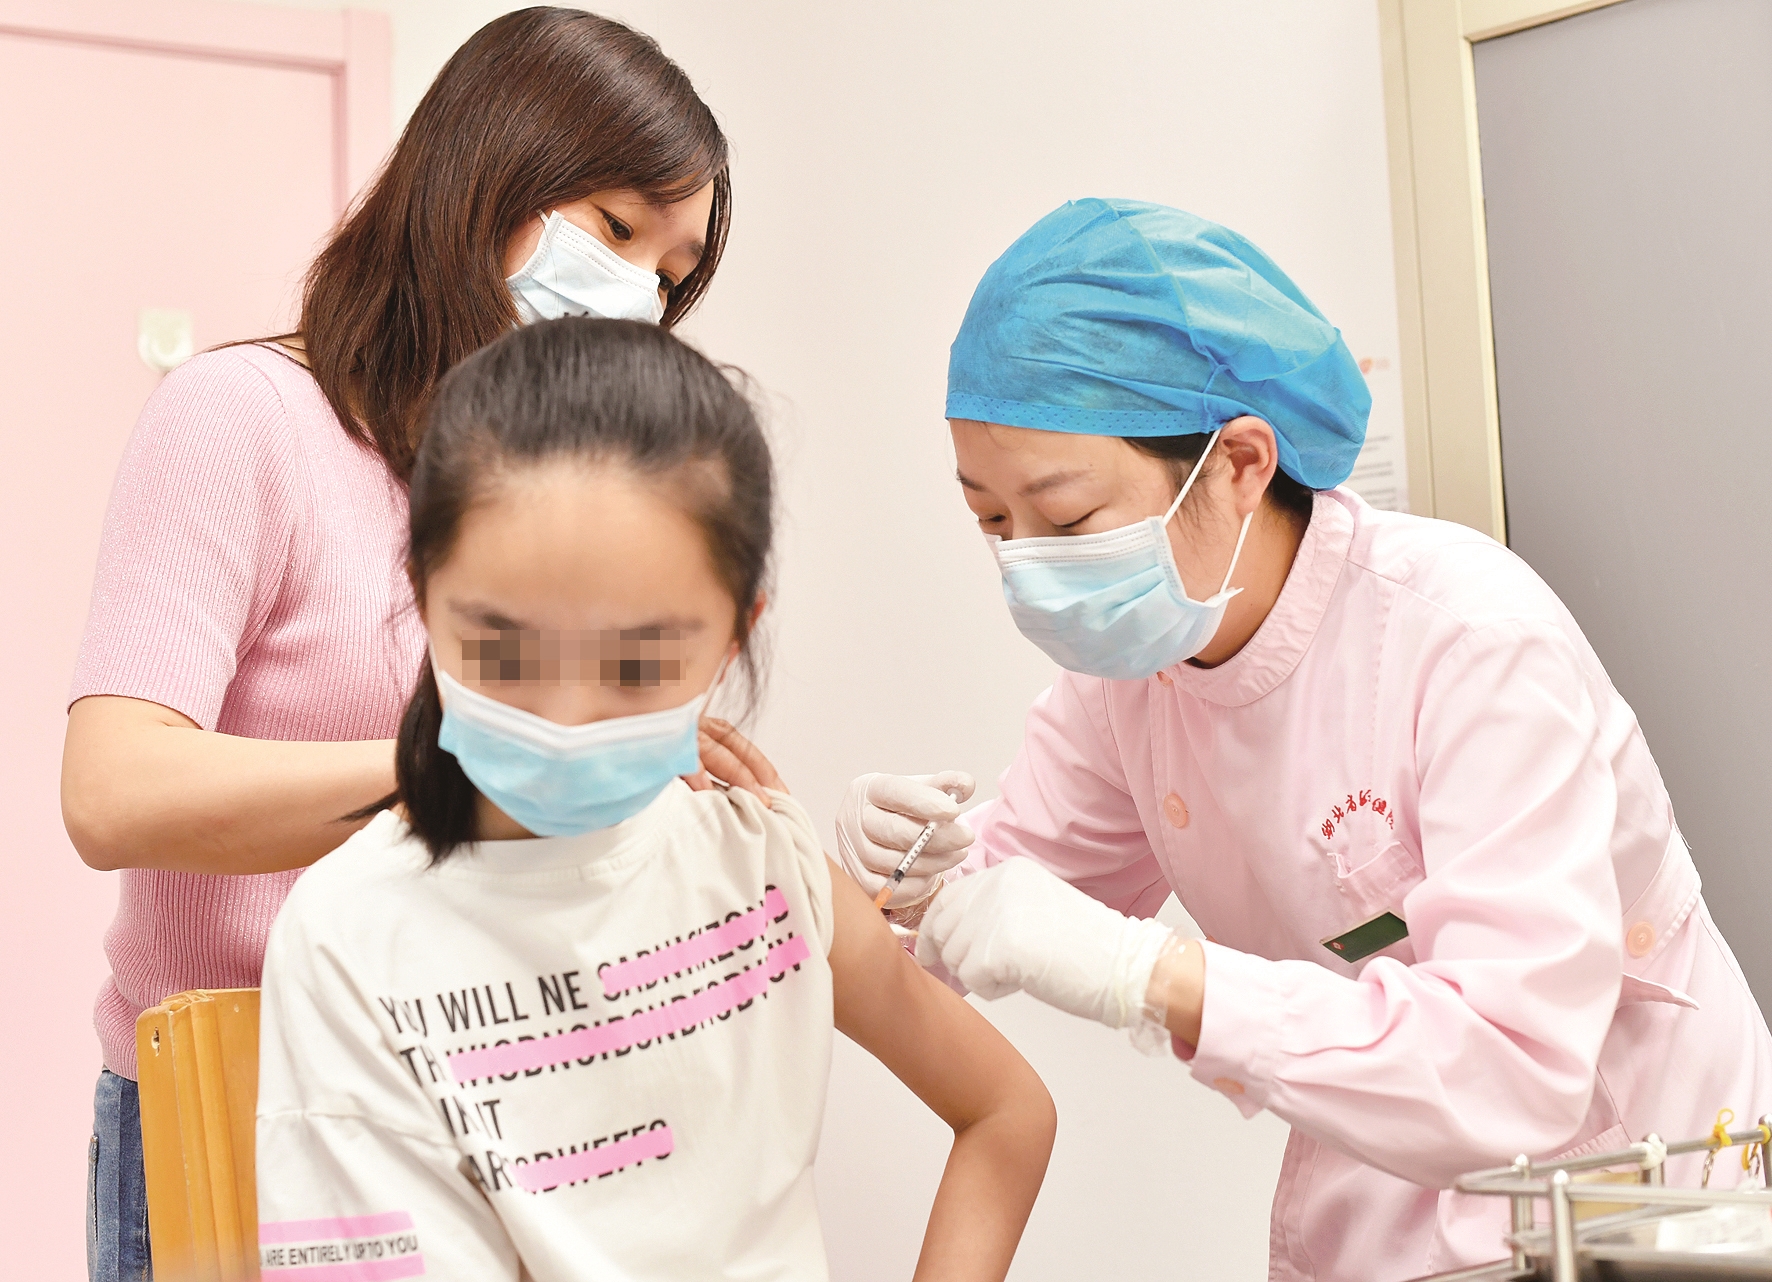 国产二价hpv疫苗全国首针开打 10岁武汉女孩成第一个接种者